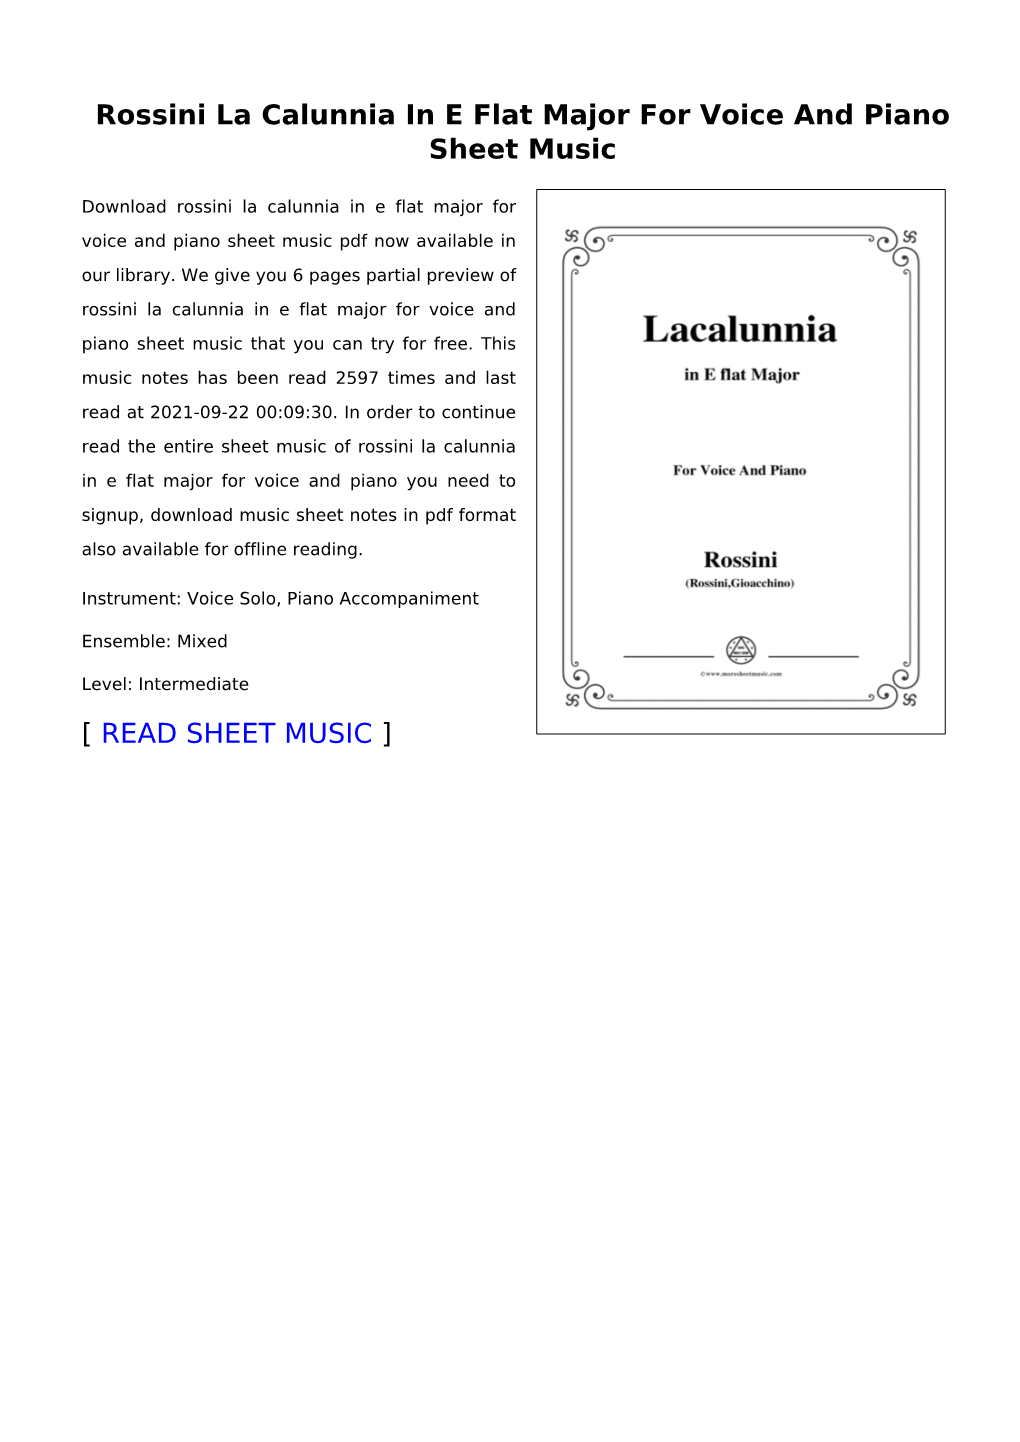 Rossini La Calunnia in E Flat Major for Voice and Piano Sheet Music